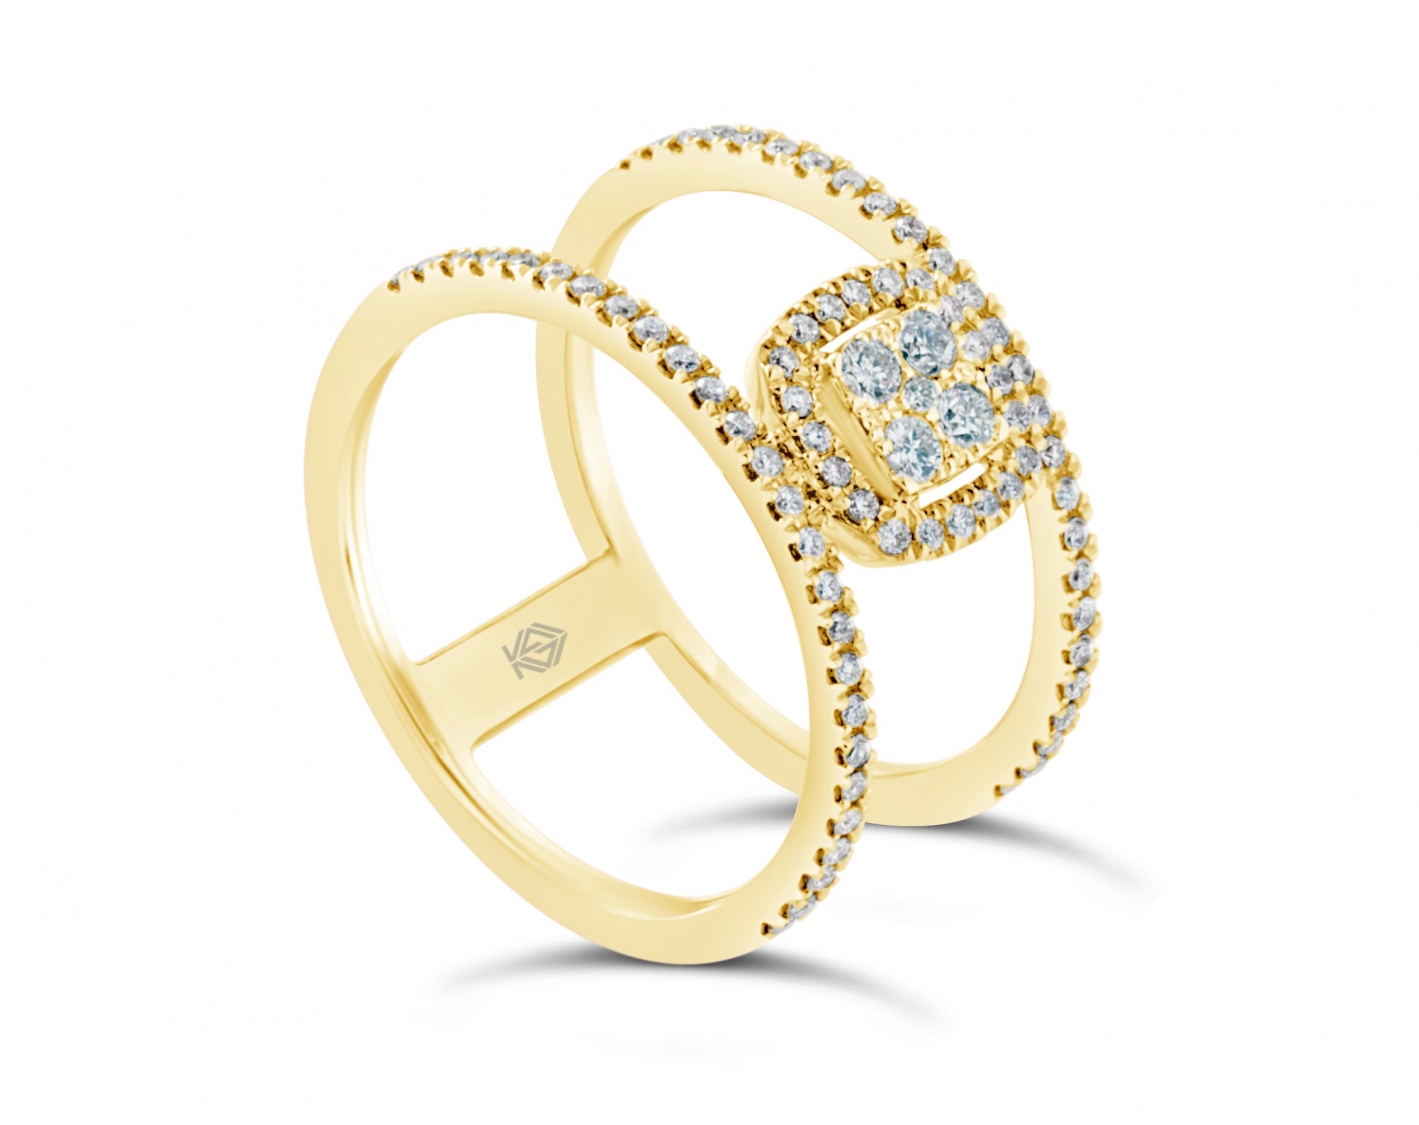 18k yellow gold halo illusion set round shaped diamond engagement ring Photos & images